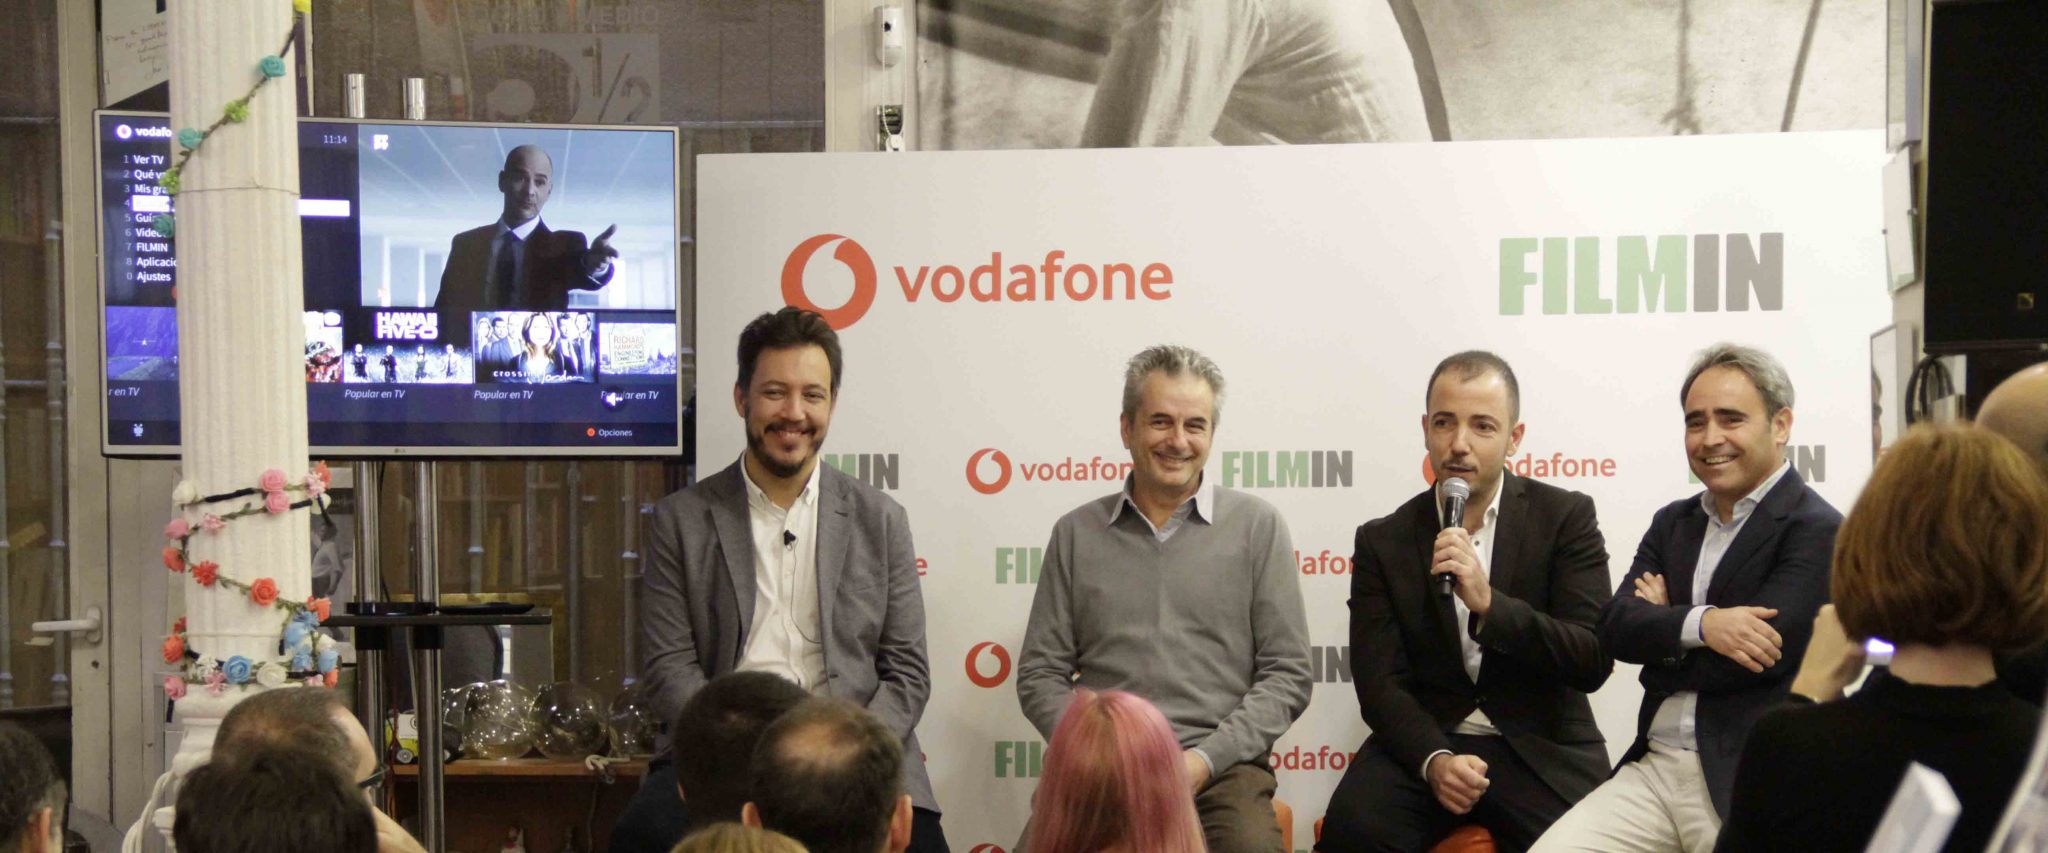 Vodafone apuesta por el contenido independiente aliándose con Filmin